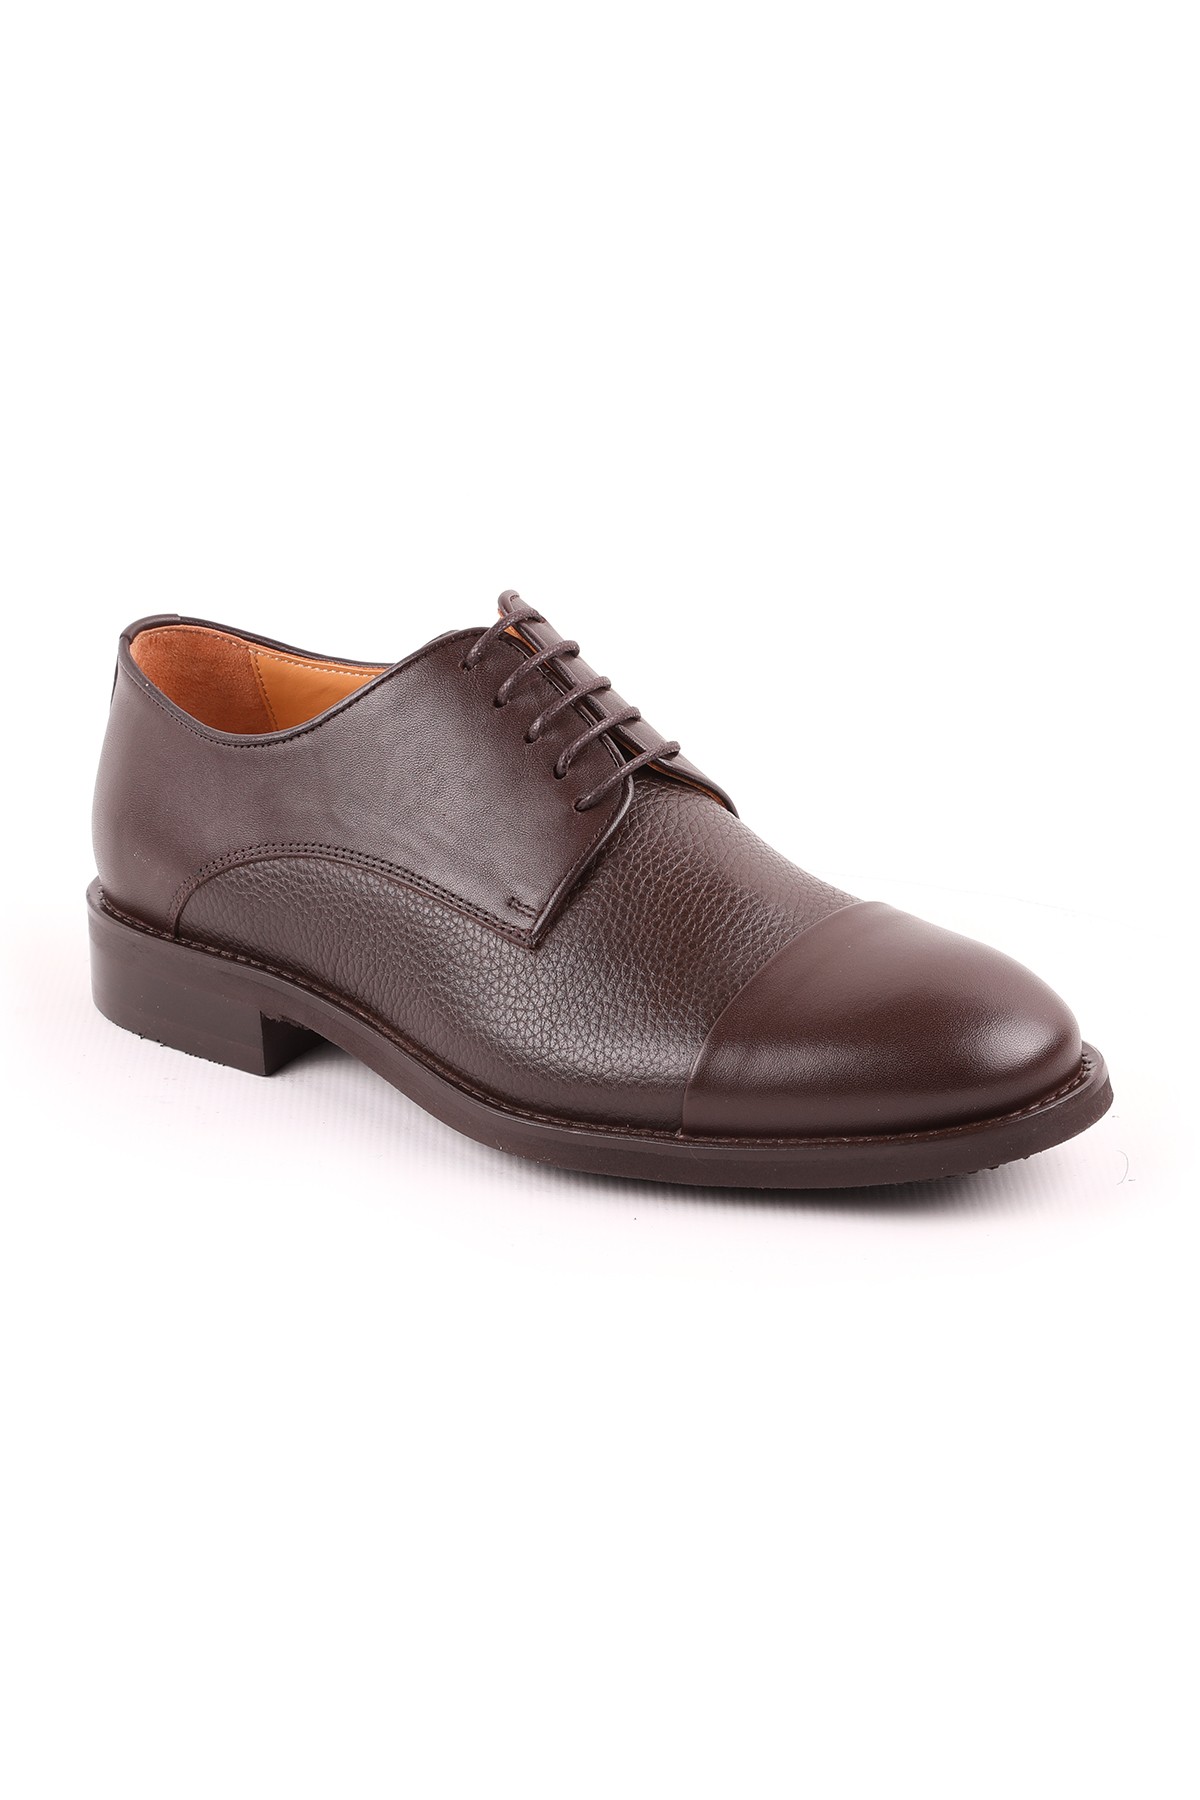 Libero L5096 Klasik Erkek Ayakkabı KAHVE - KAHVE